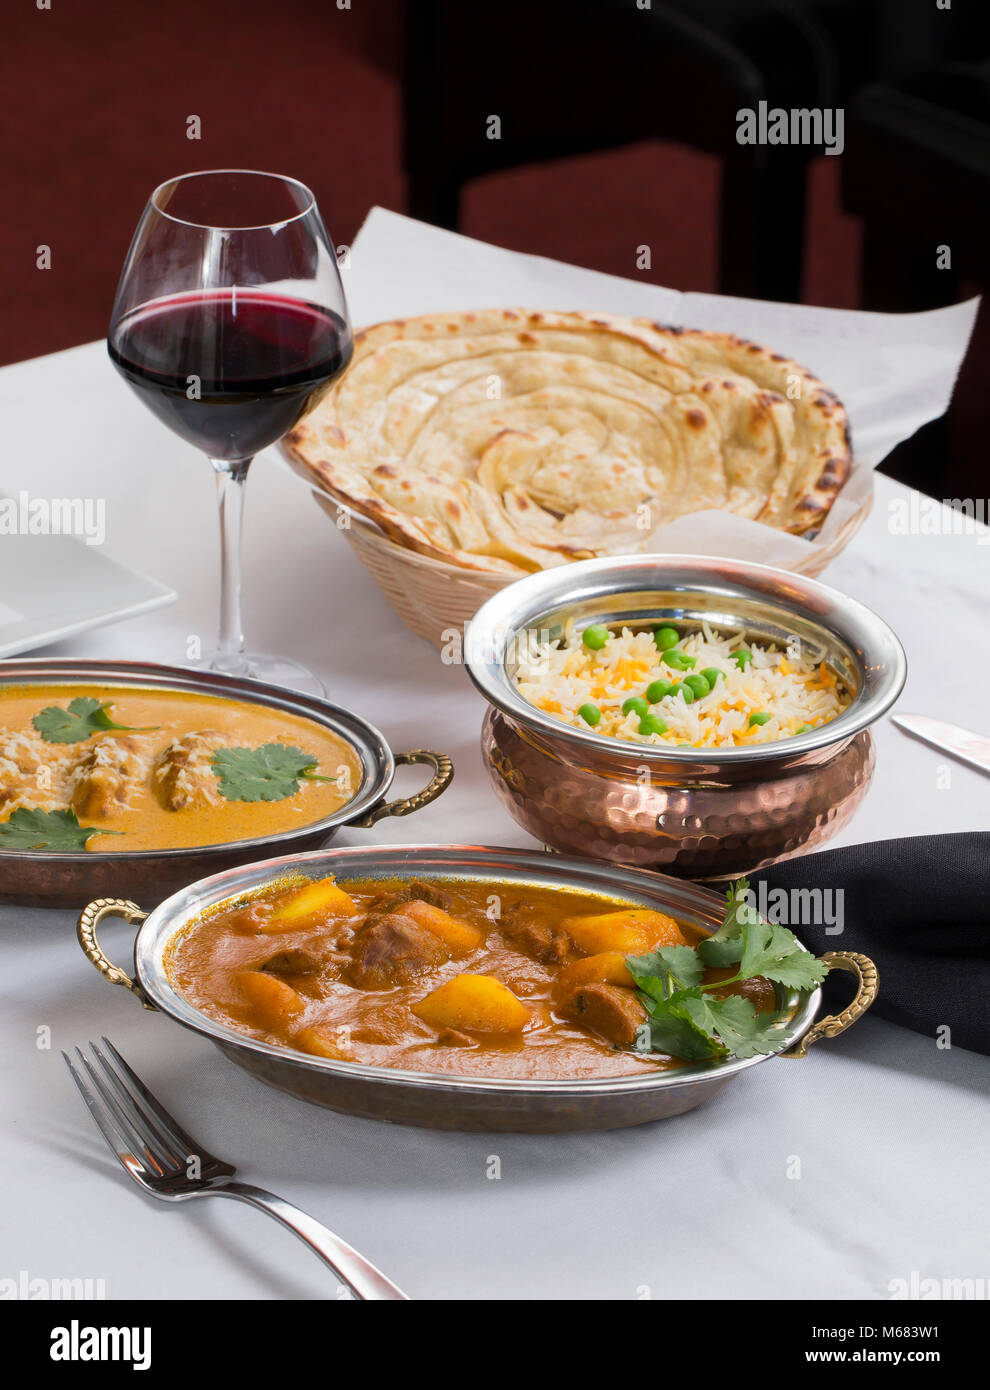 Indische Curry essen verteilen sich auf ein phantastisches Abendessen Tabelle mit Reis, laccha Paratha, Lamm aam Wala, Safran Malai Kofta, Rotwein. Stockfoto